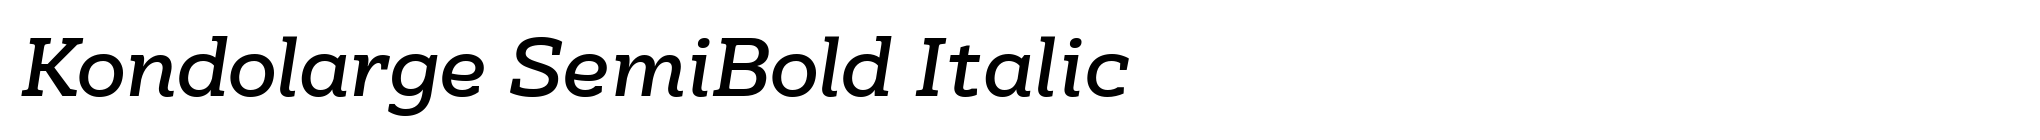 Kondolarge SemiBold Italic image